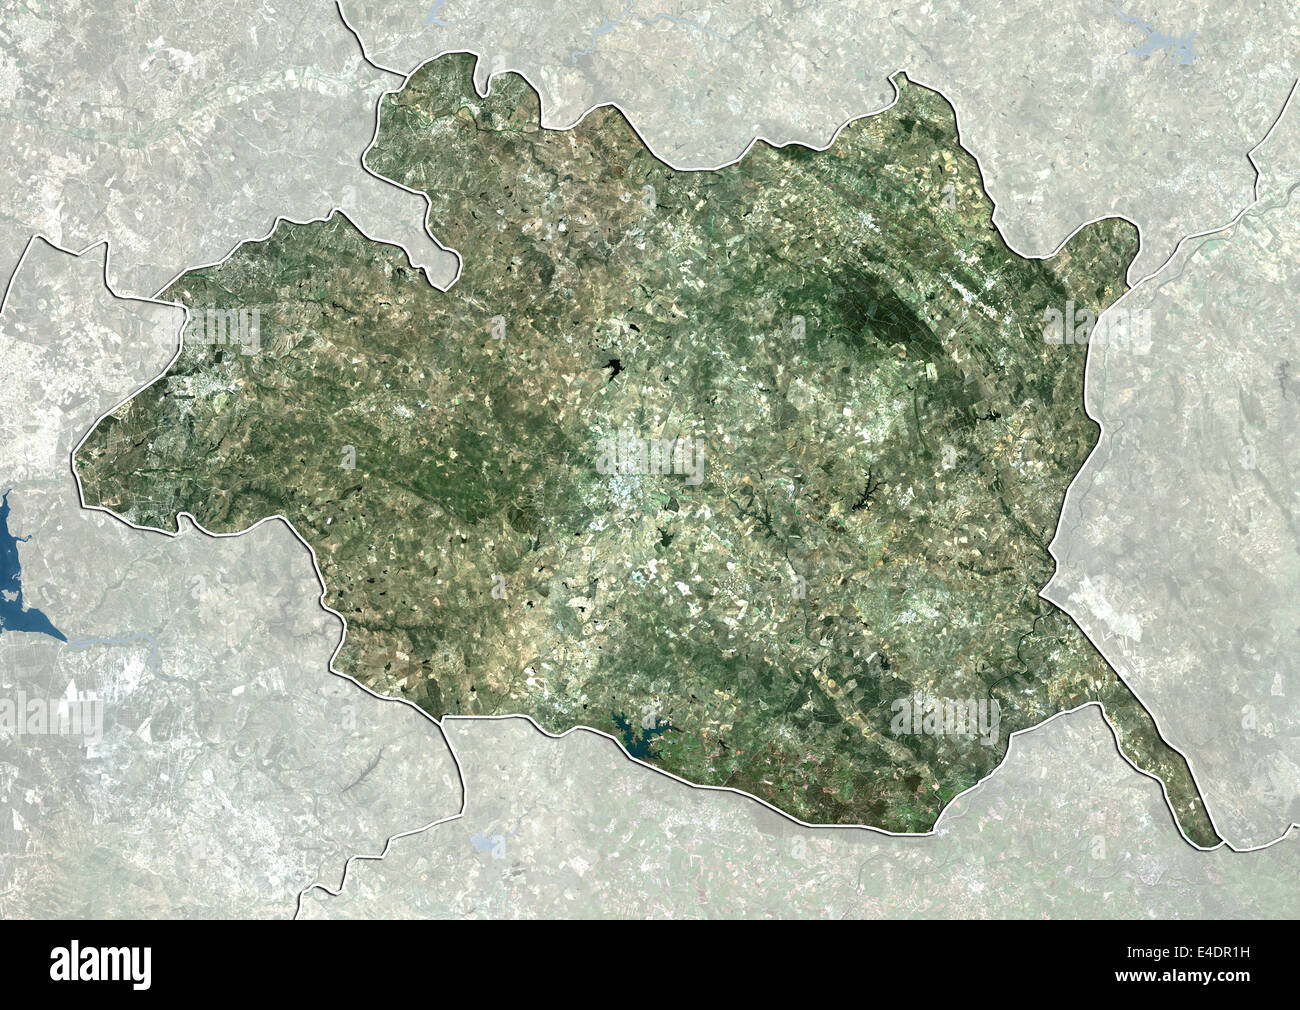 District of Evora, Portugal, True Colour Satellite Image Stock Photo